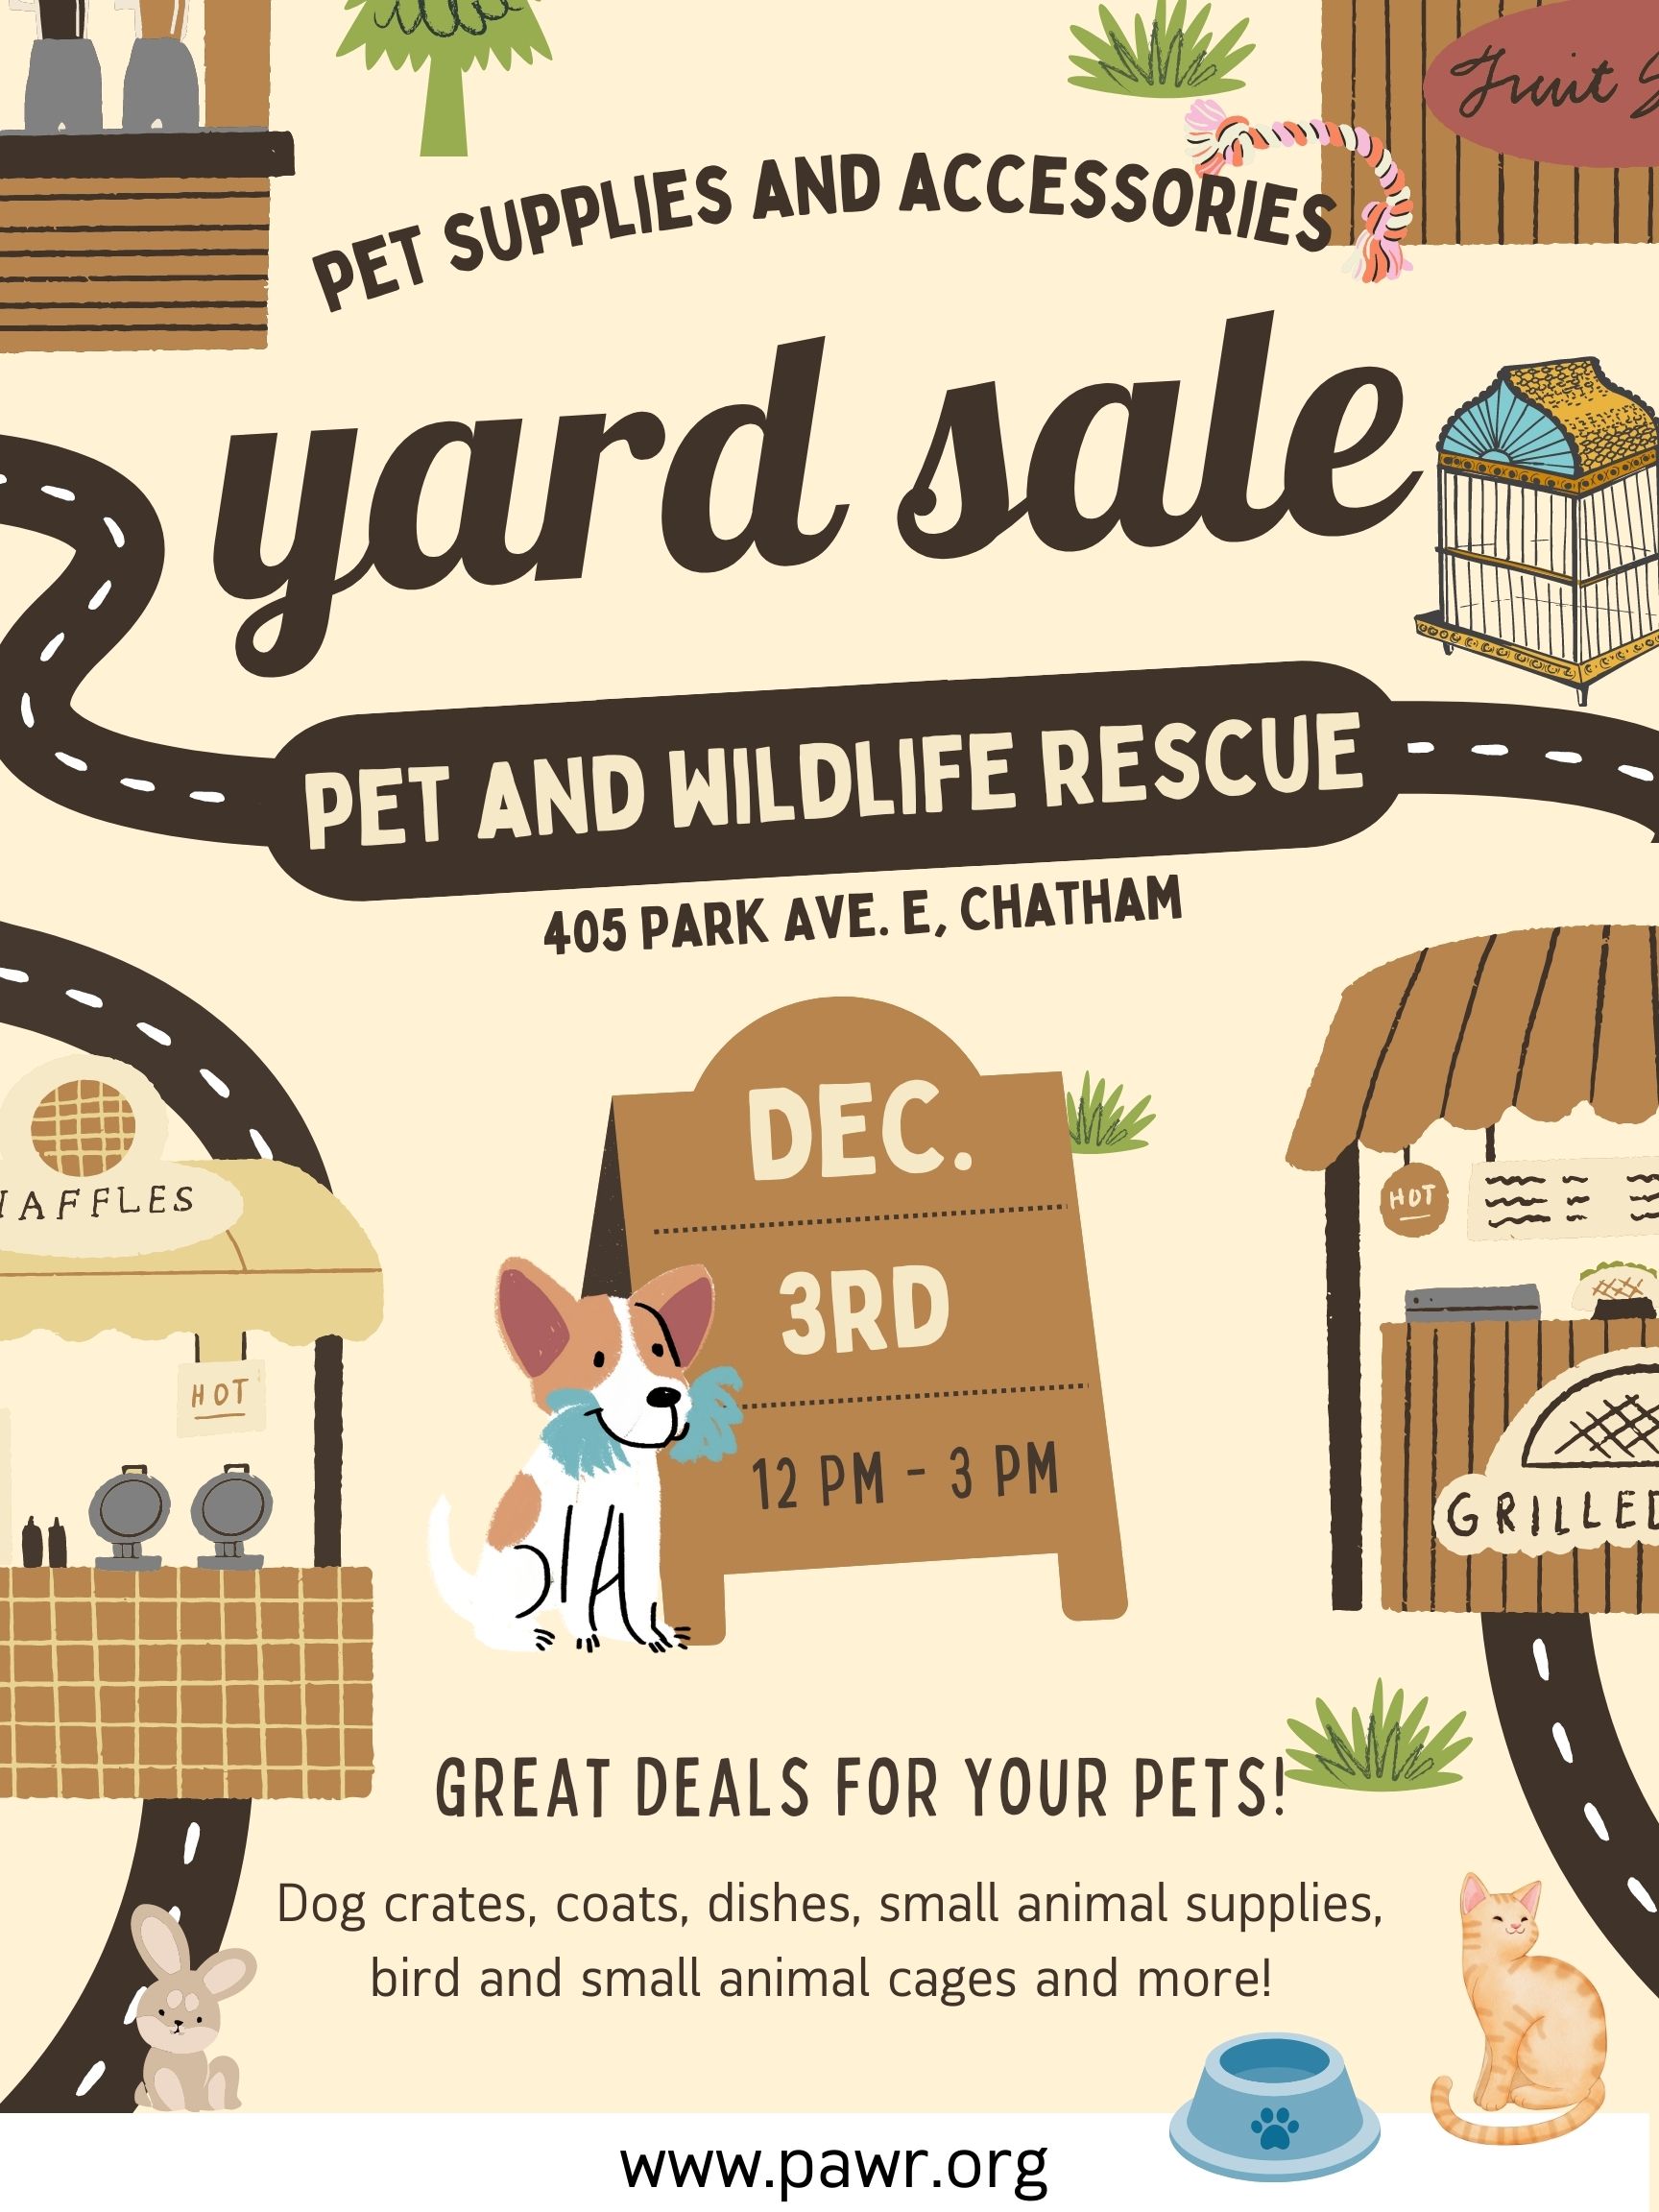 December 3rd Pet Supplies Yard Sale